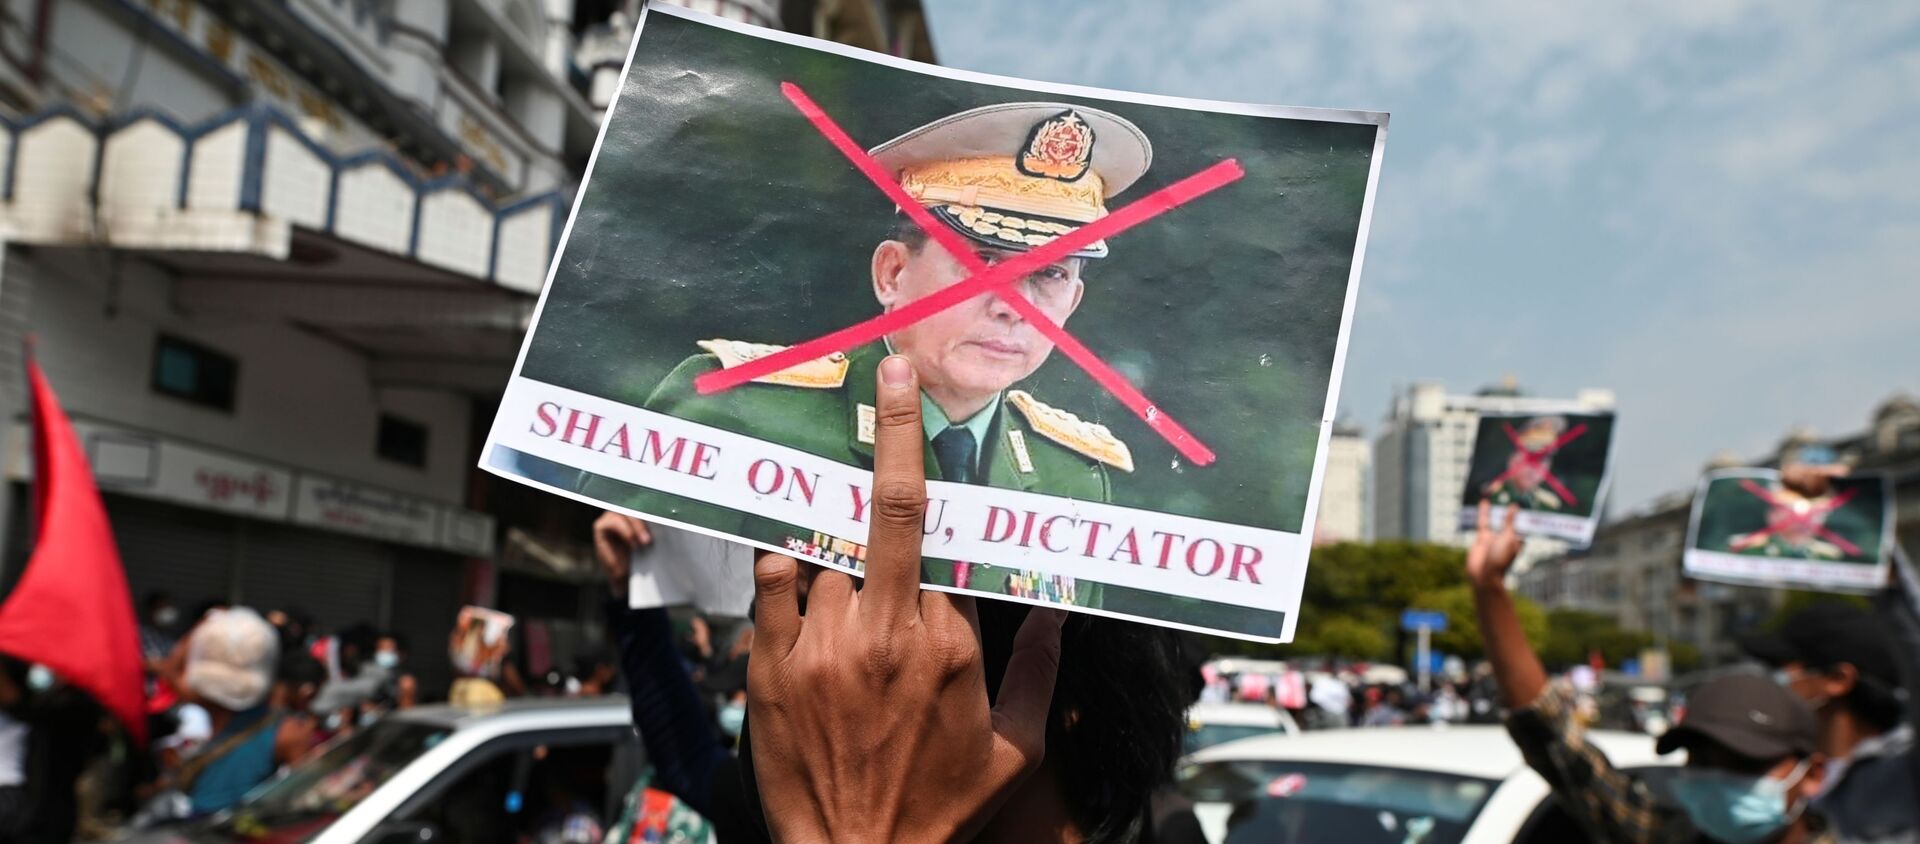 Askeri darbeye karşı düzenlenen protestolarda Genelkurmay Başkanı Min Aung Hlaing'in resmine çarpı atılıp 'Utan diktatör' yazıldı. (Yangon, Myanmar) - Sputnik Türkiye, 1920, 11.03.2021